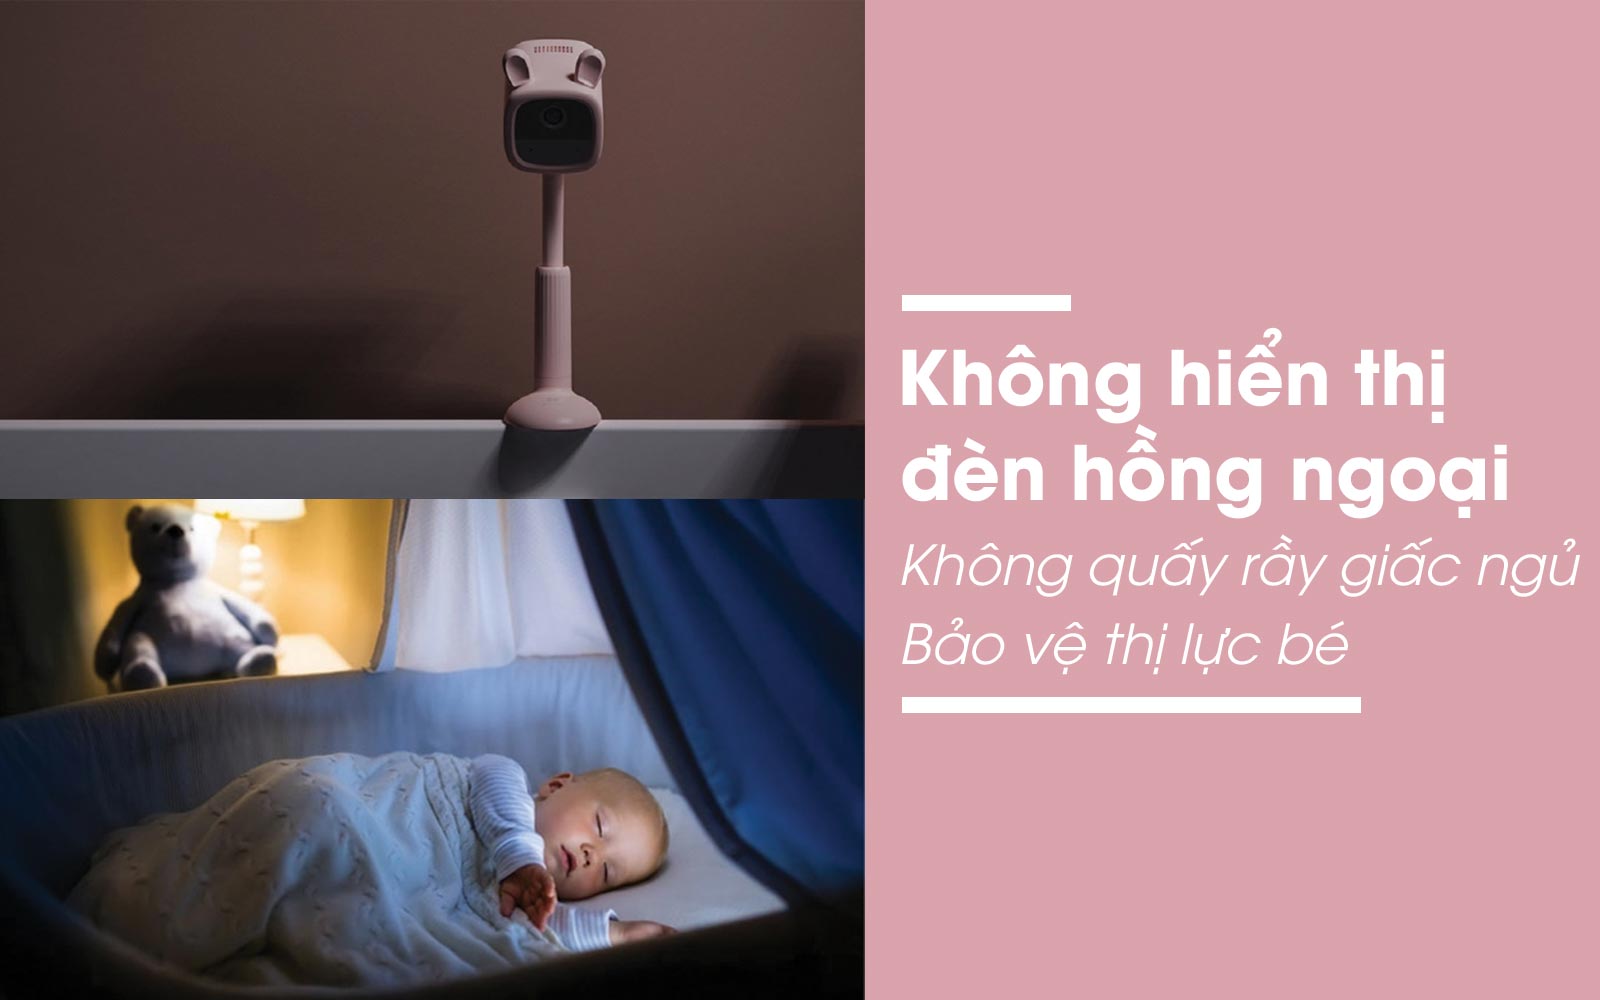 Camera EZVIZ BM1 2MP FullHD pin 2000 mAh - an toàn cho bé, bảo vệ giất ngủ bé yêu